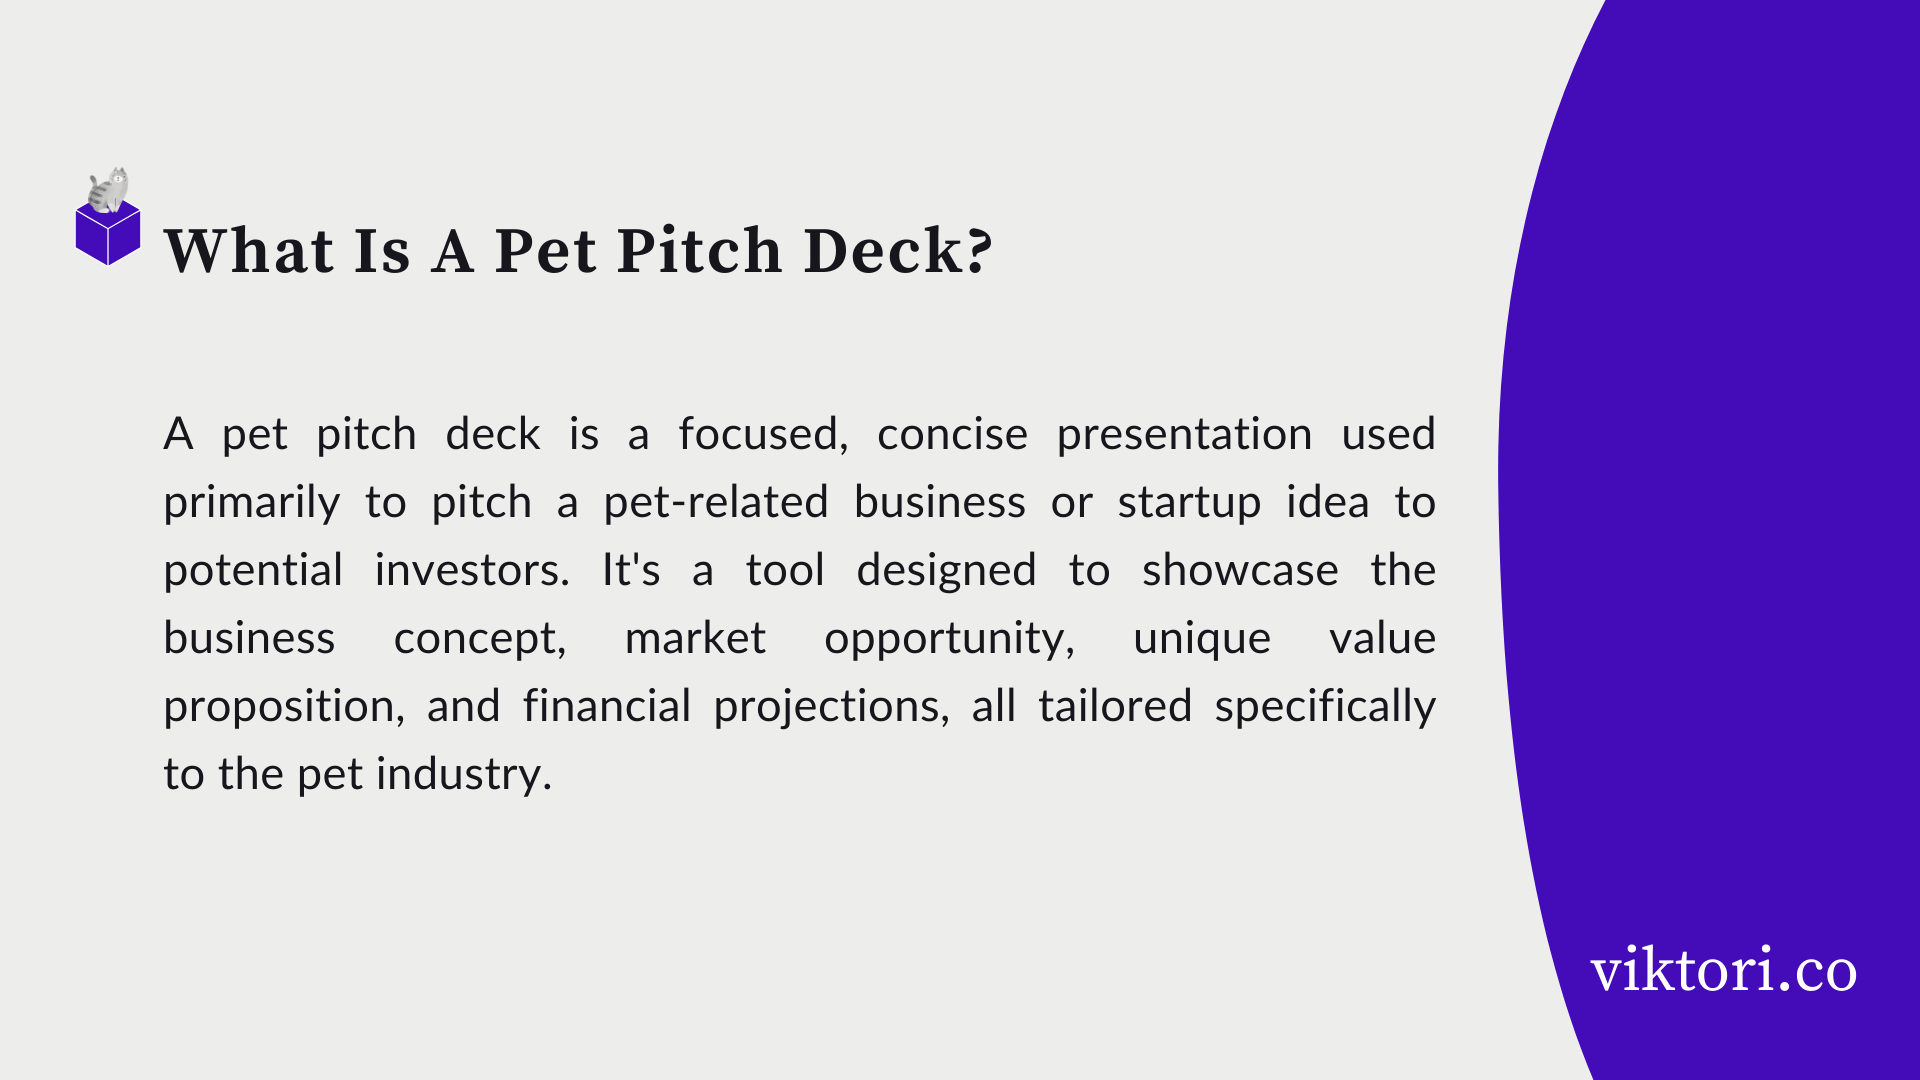 pet pitch deck definition